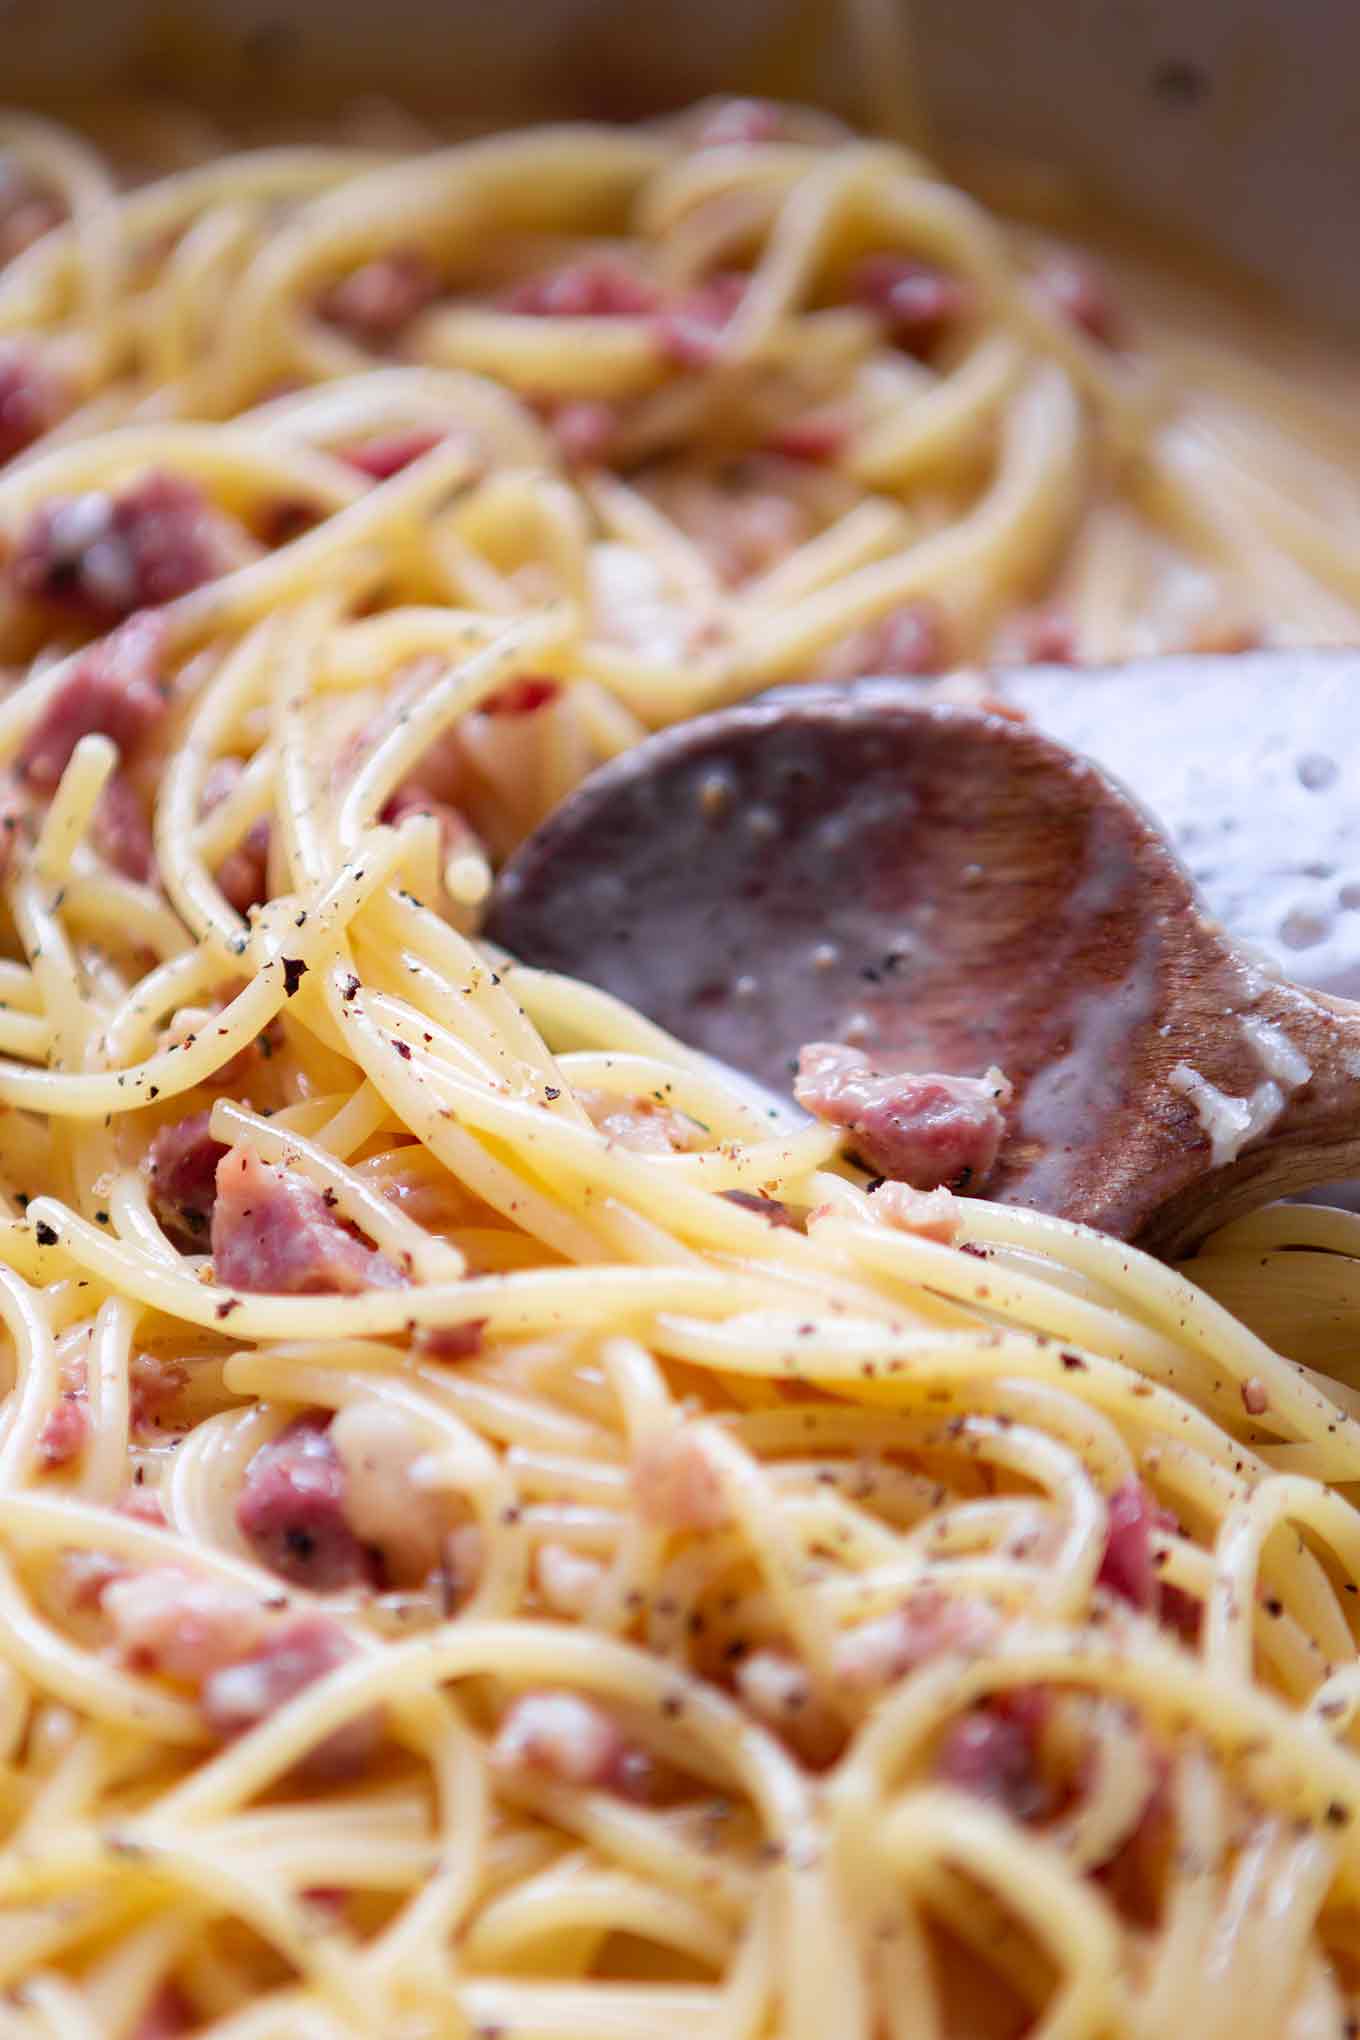 Einfache Spaghetti Carbonara. Dieses 6-Zutaten Rezept ist herzhaft, in 20 Minuten fertig und unglaublich cremig. - Kochkarussell.com #carbonara #pasta #rezept #schnellundeinach 